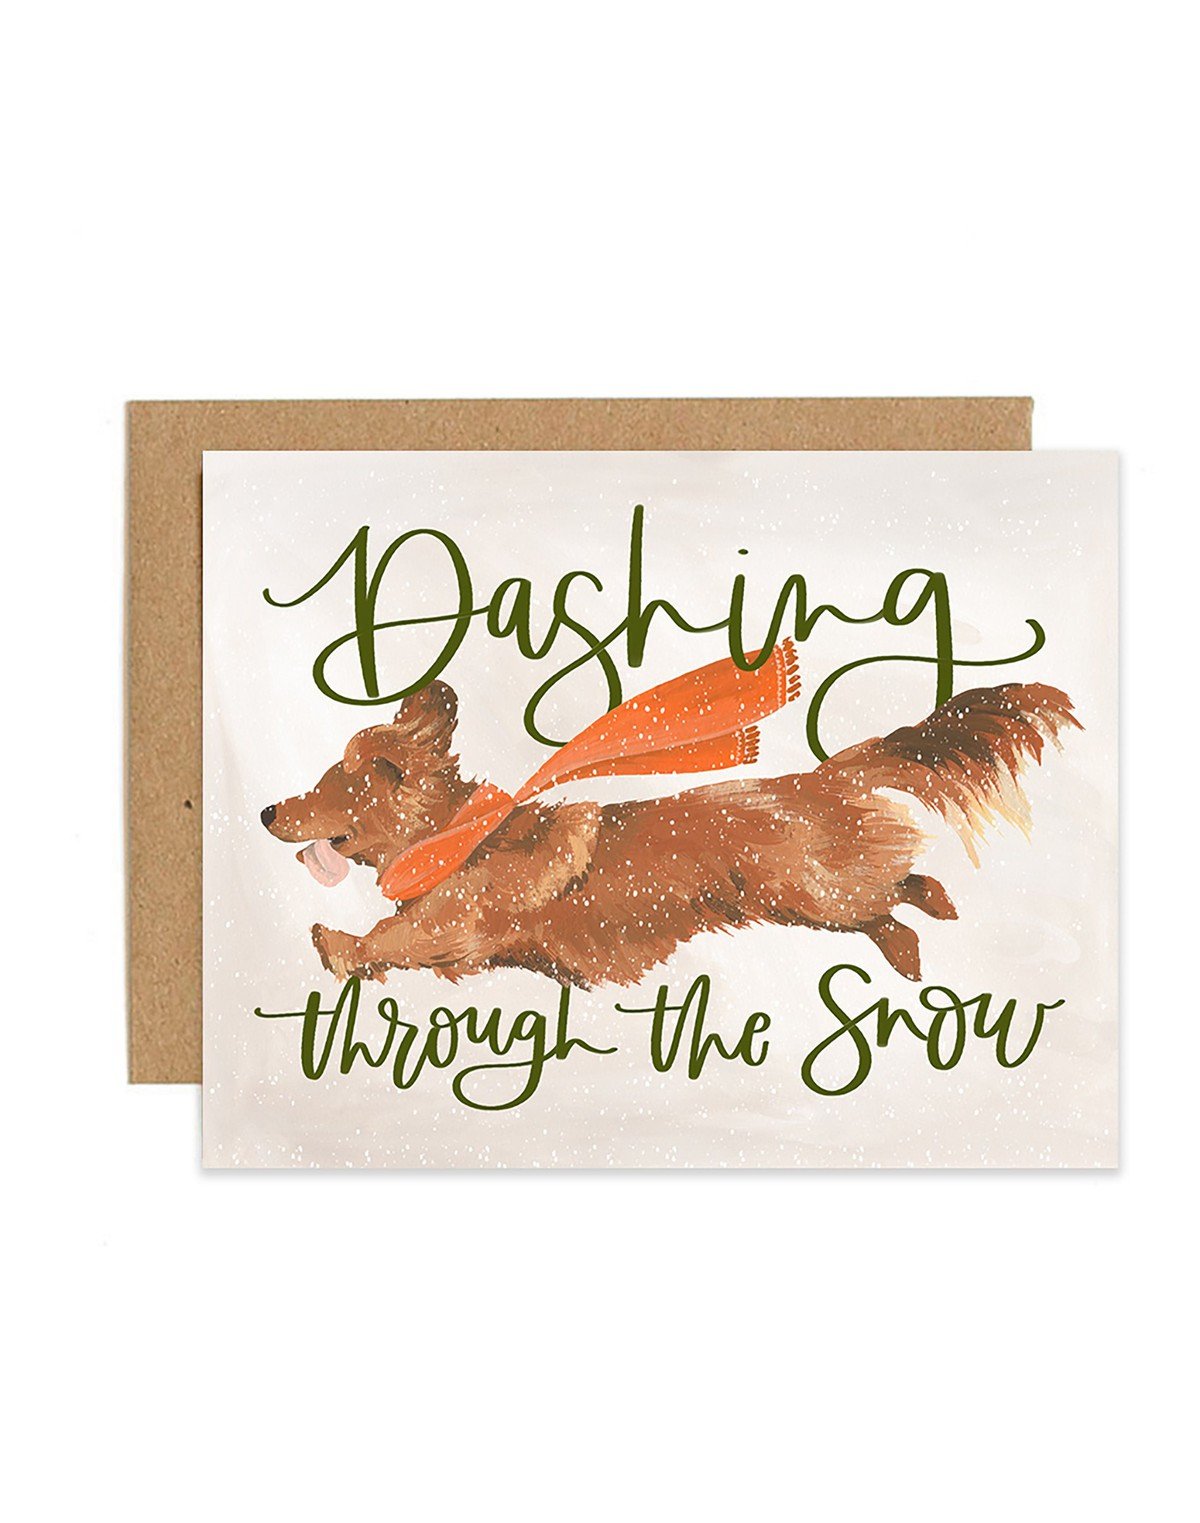 Dashing Dog Greeting Card item